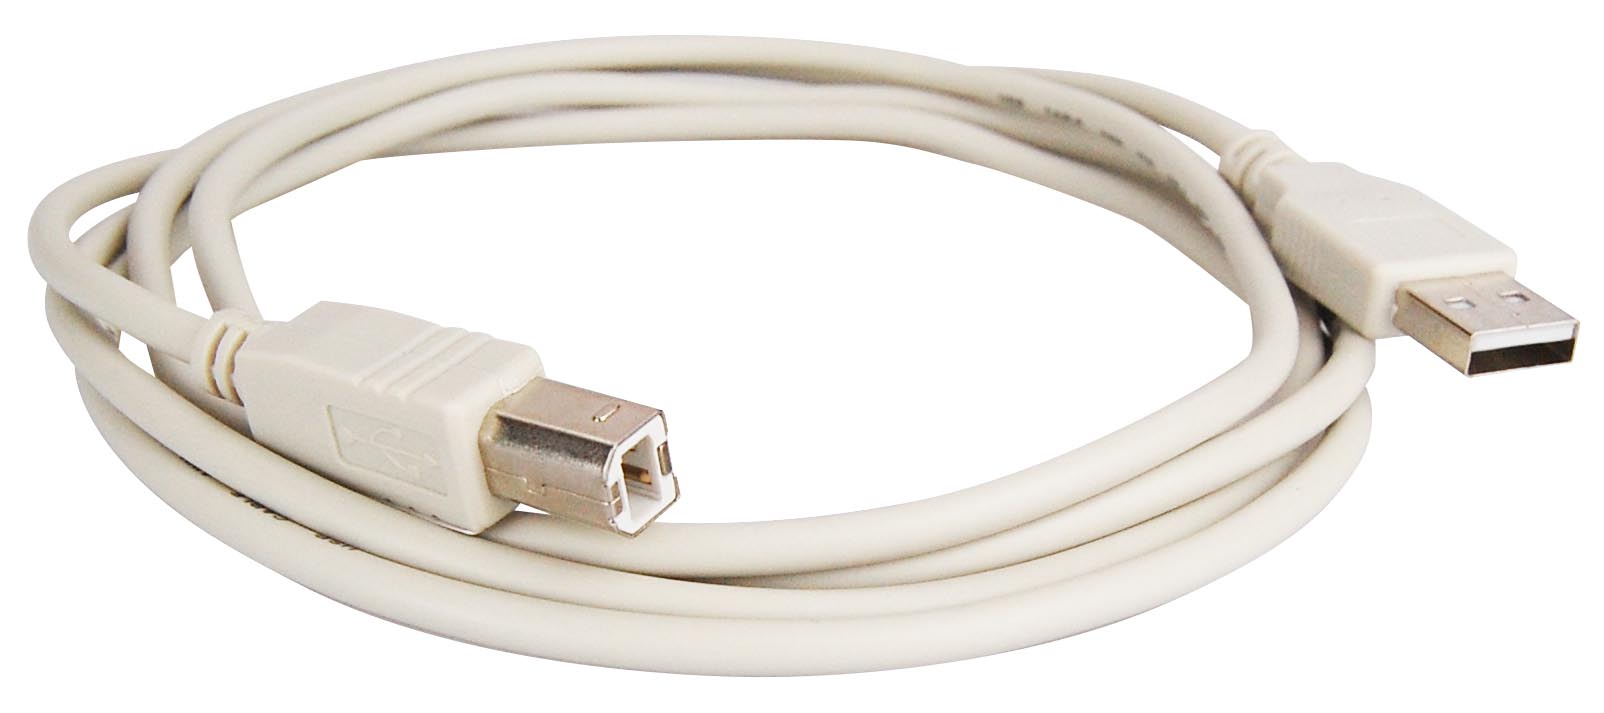 Das USB-Kabel hat einen normalen USB-Stecker sowie einen B-Stecker um z.B. Drucker anzuschließen.